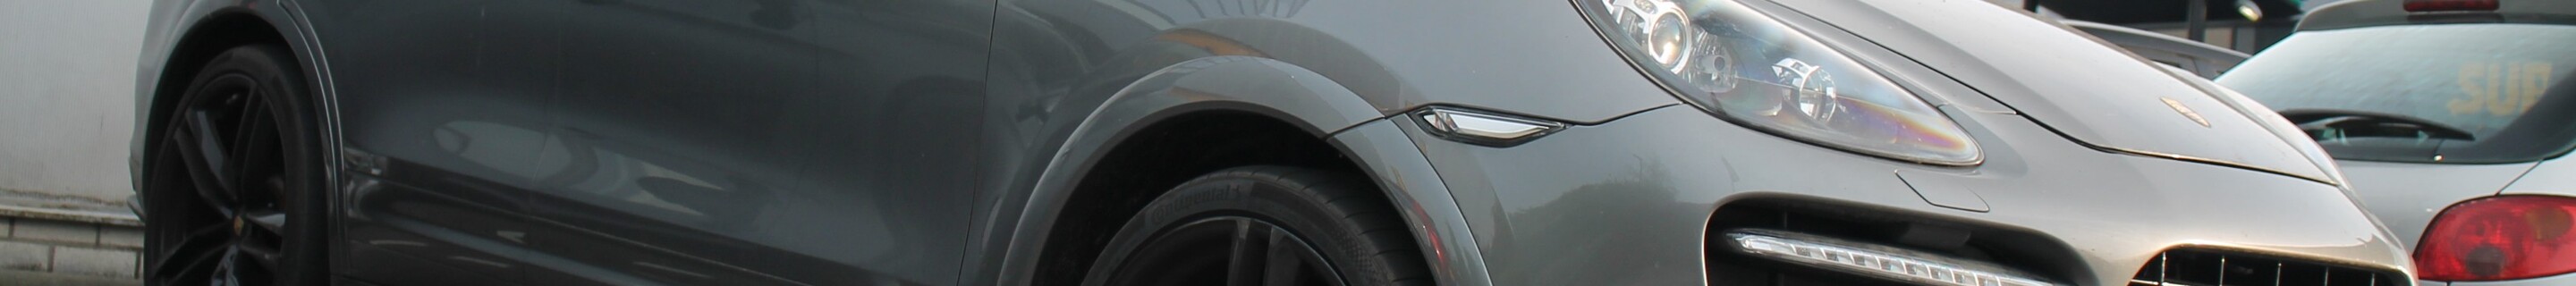 Porsche TechArt Cayenne GTS 2013